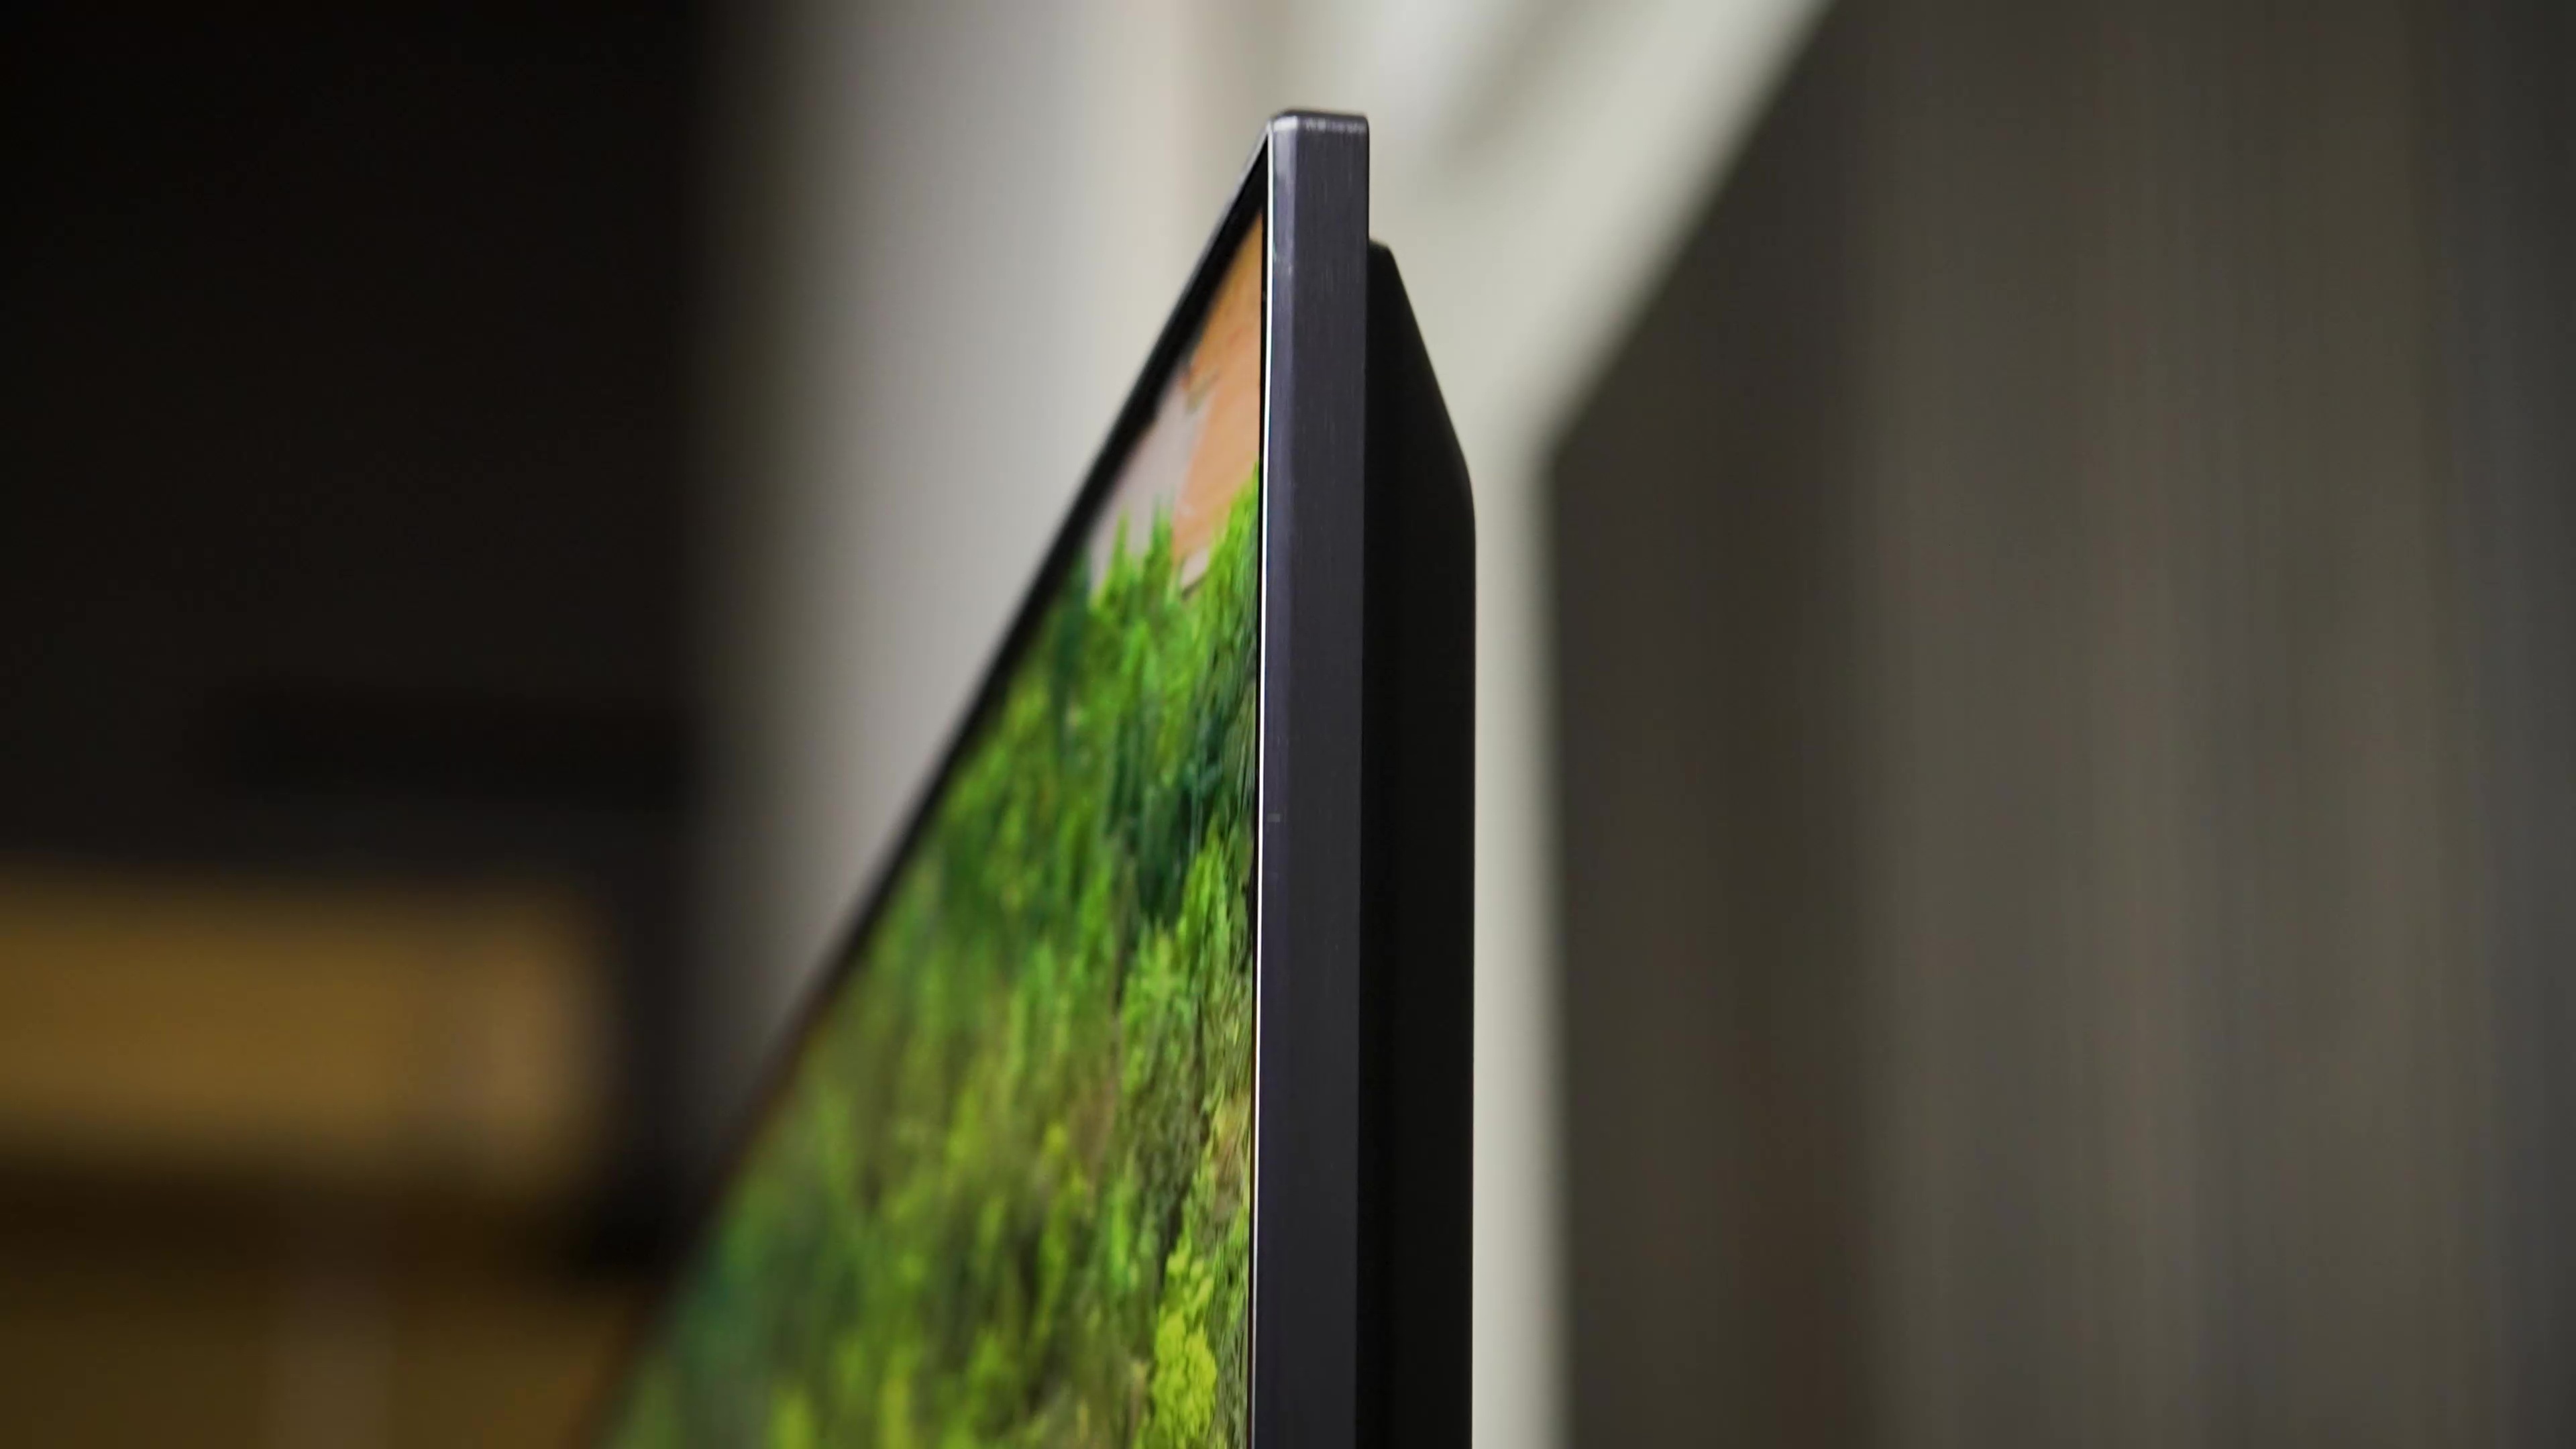 Hisense U7K ULED mini-LED TV review